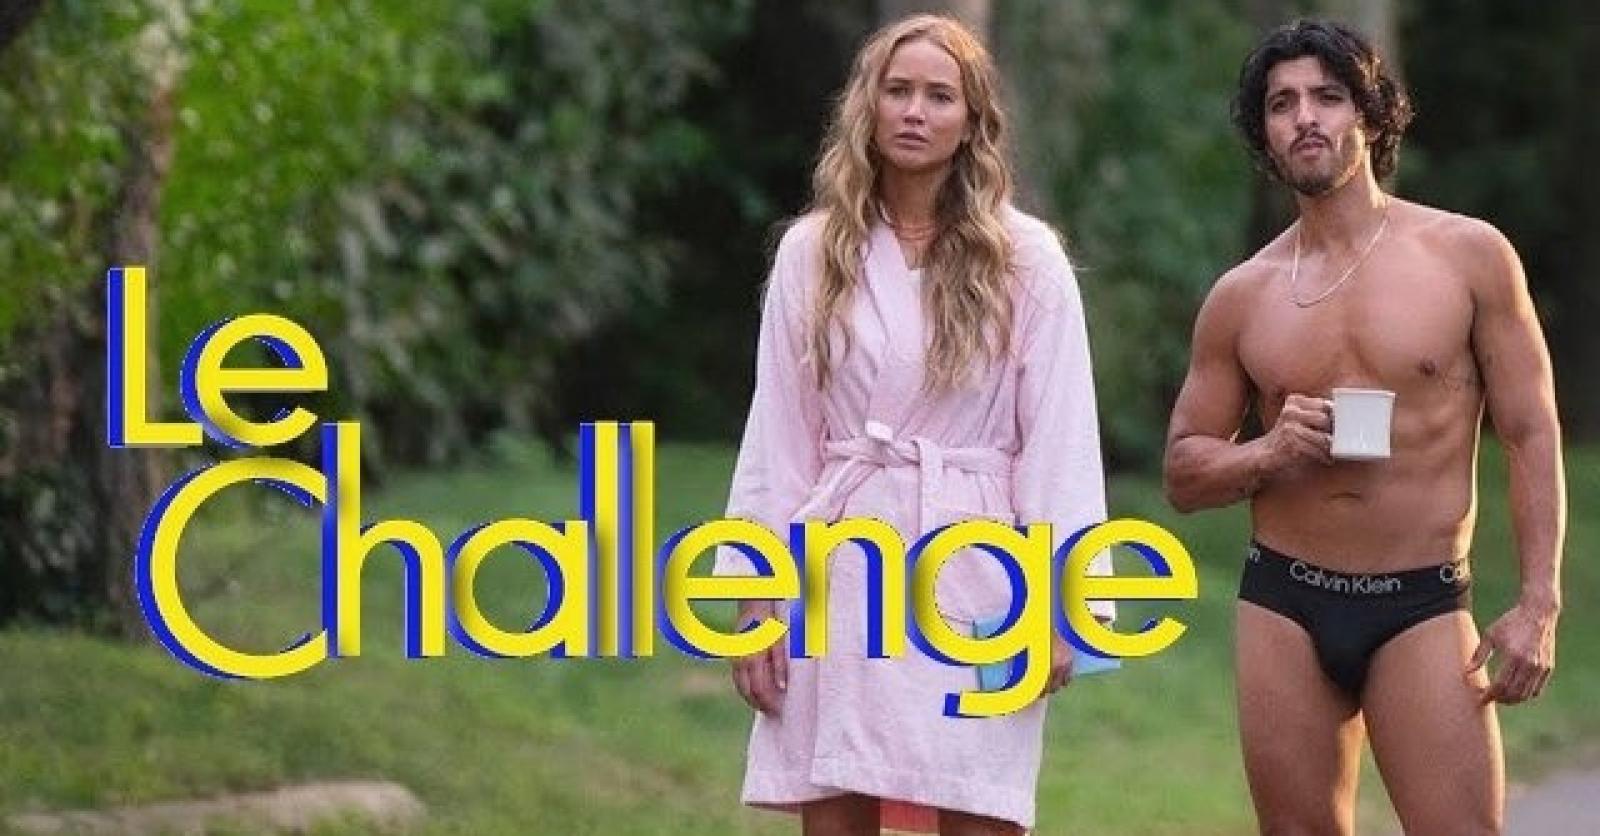 ON A VU: Le Challenge, la comédie hilarante portée par Jennifer Lawrence